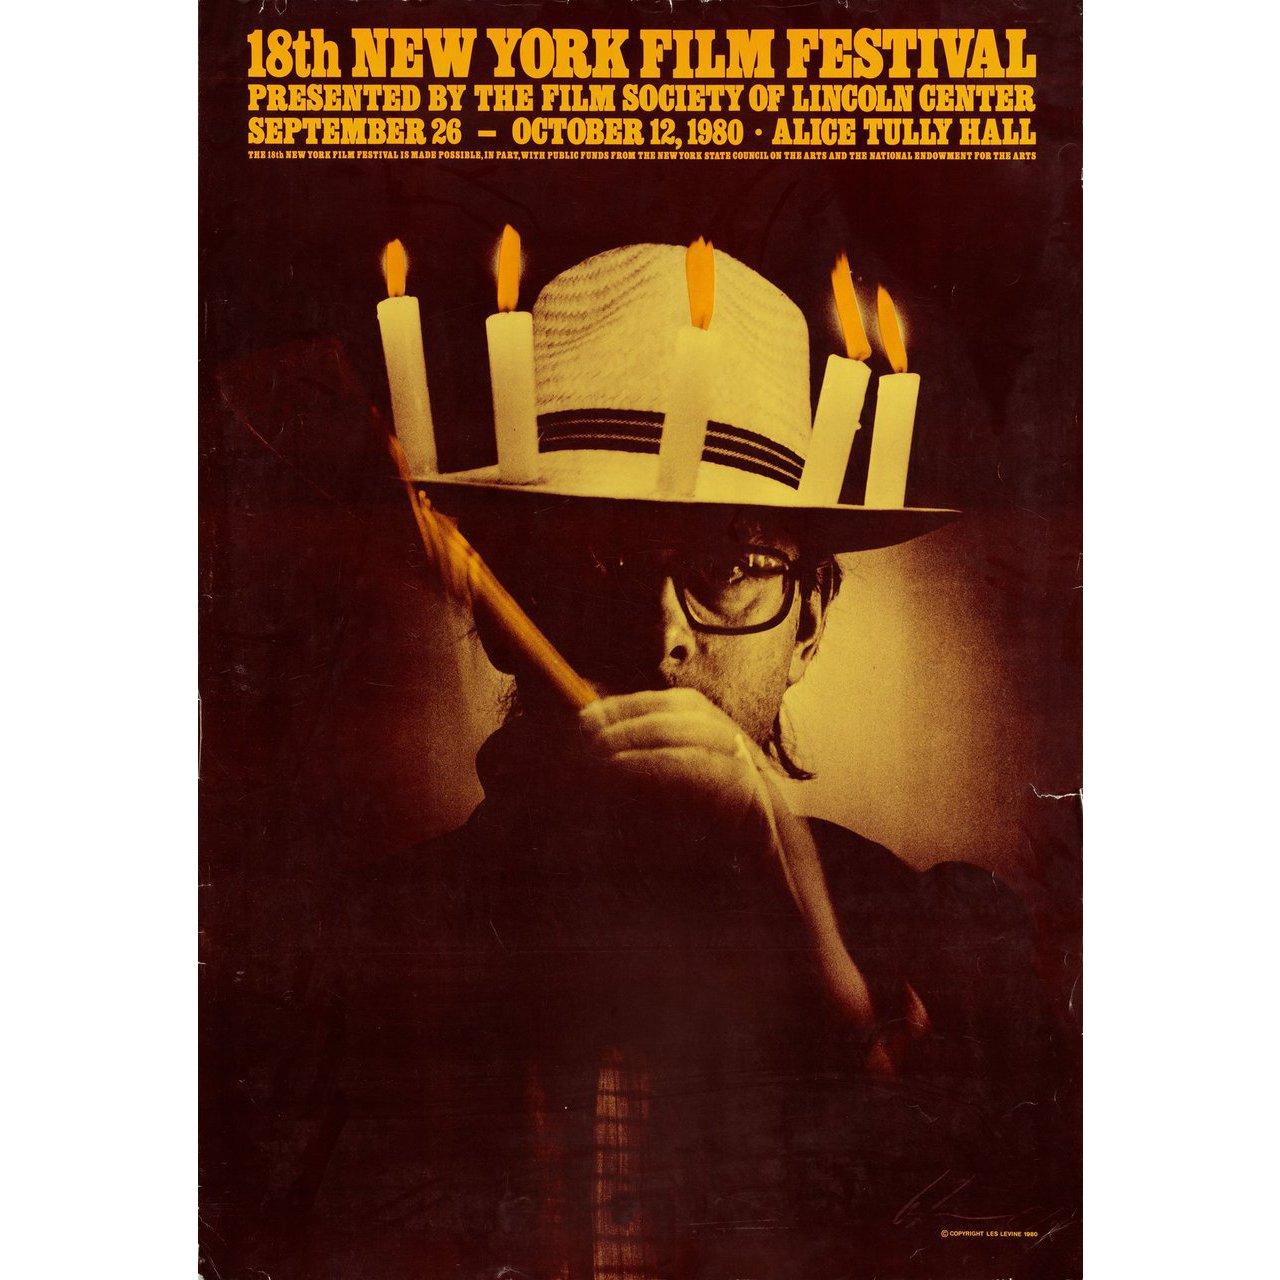 Originalplakat von Les Levine aus dem Jahr 1980 für das New York Film Festival 1963. Signiert von Les Levine. Sehr guter Zustand, gerollt mit Rissen. Bitte beachten Sie: Die Größe ist in Zoll angegeben und die tatsächliche Größe kann um einen Zoll